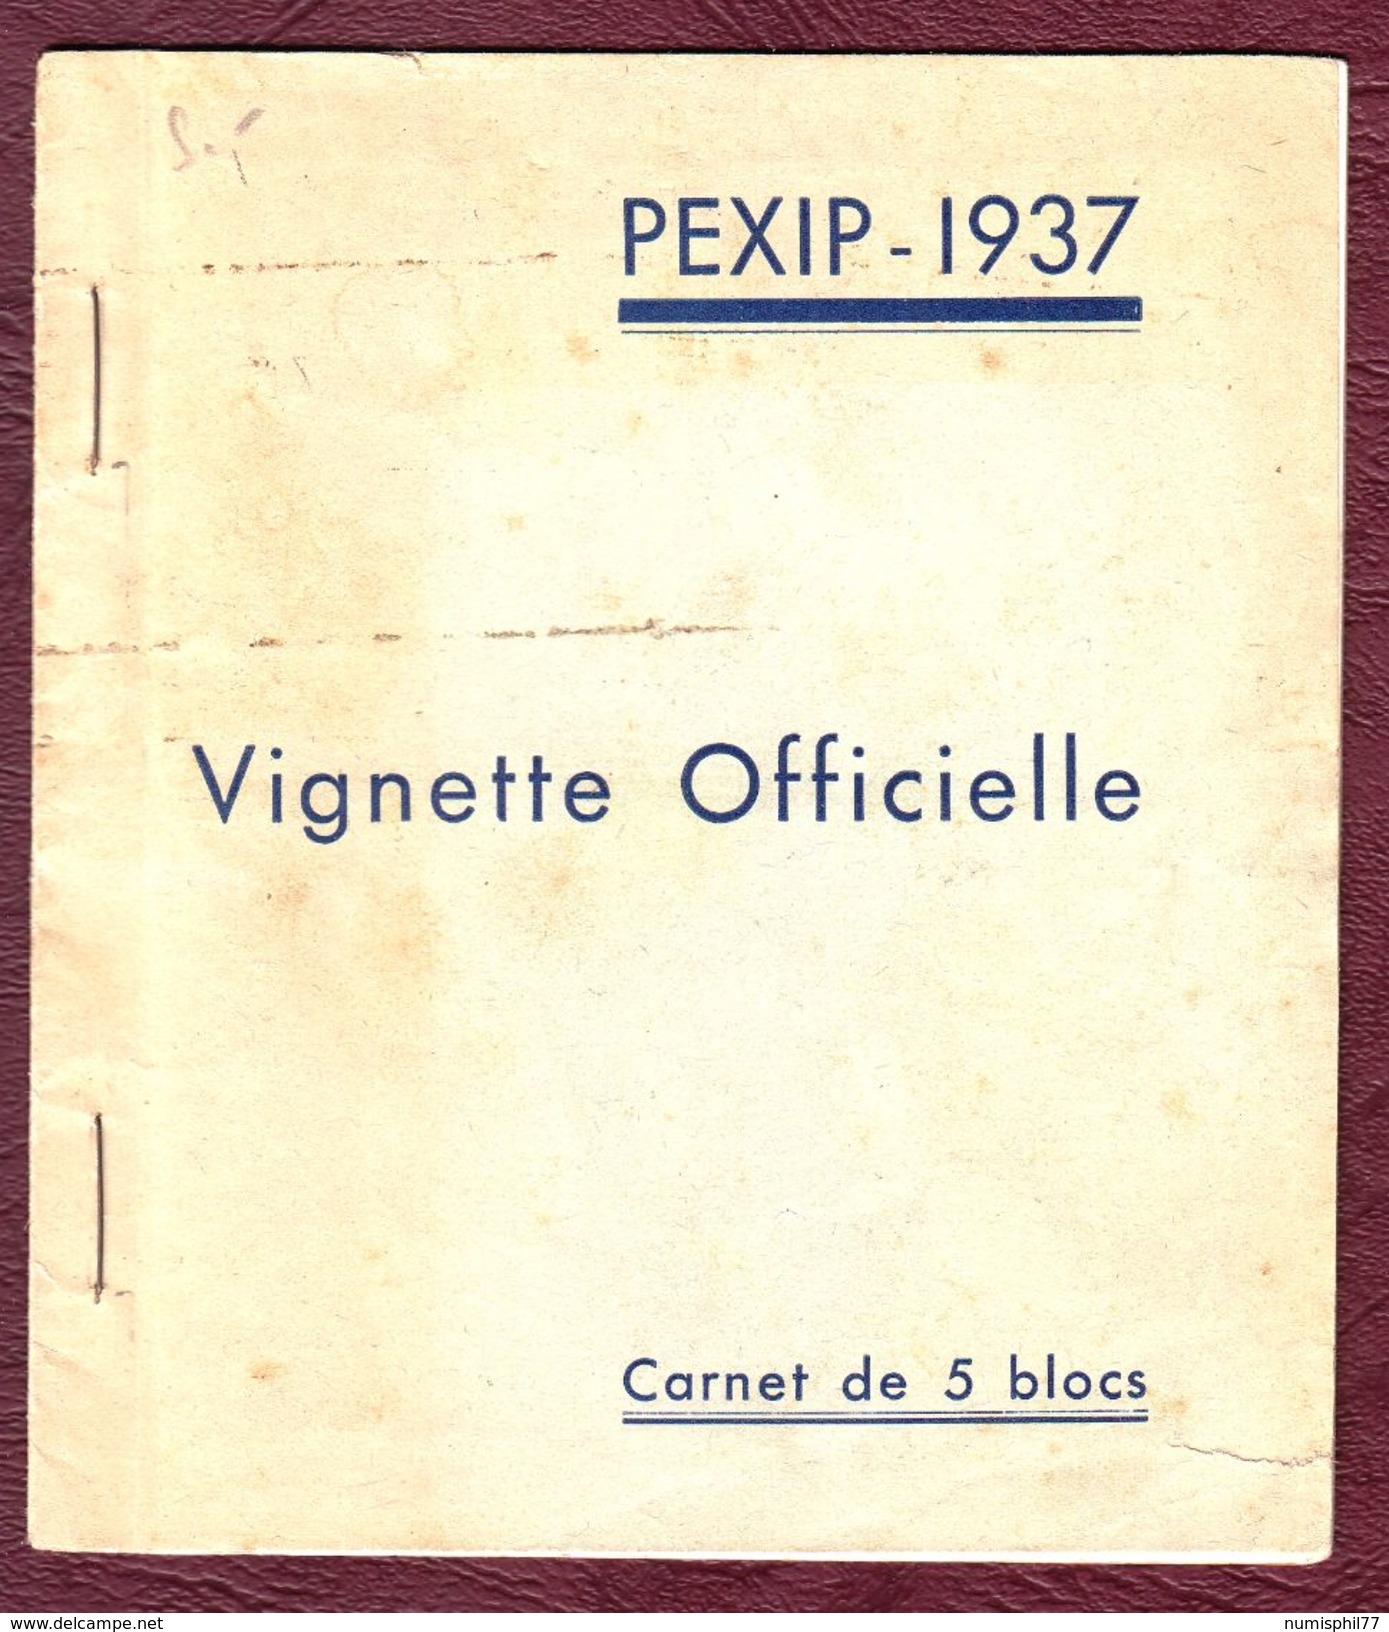 CARNET DE 5 BLOCS DE LA VIGNETTE OFFICIELLE PEXIP-1937 - Neuf ** - Philatelic Fairs